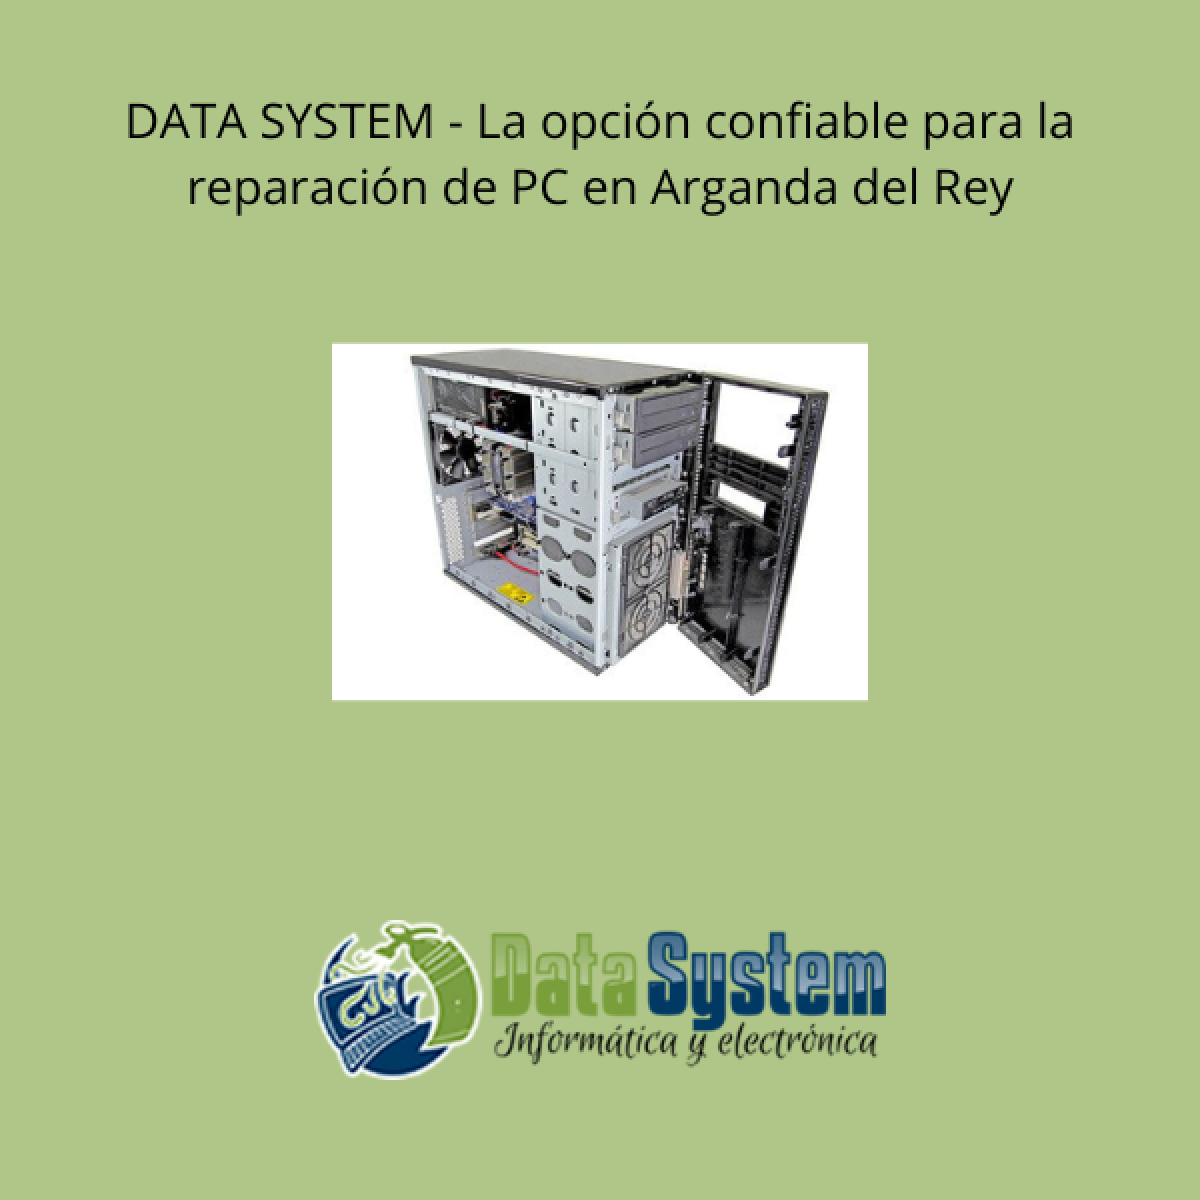 DATA SYSTEM - La opción confiable para la reparación de PC en Arganda del Rey